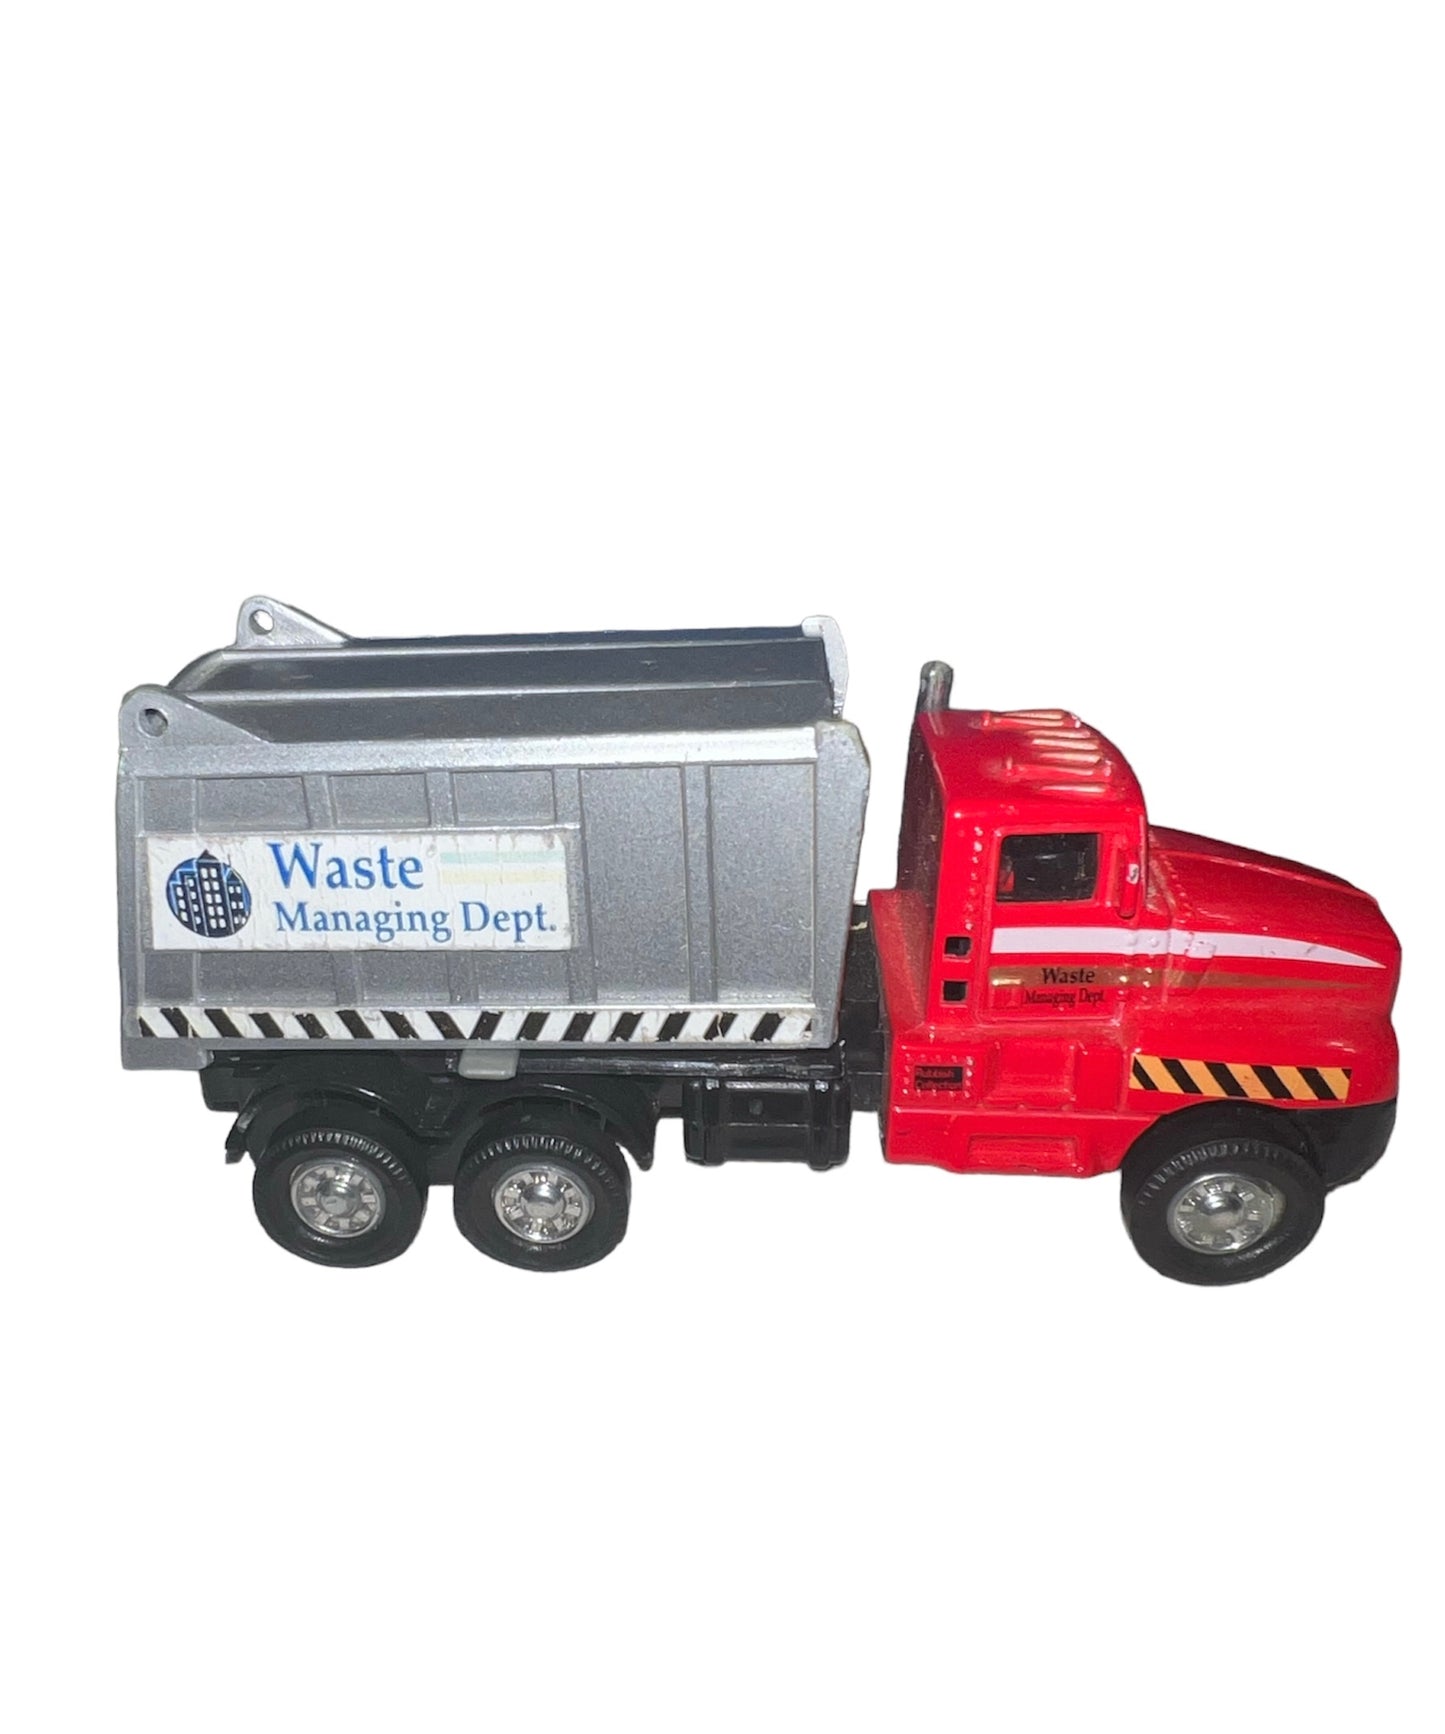 Showcaste Red Waste Managing Dept Truck 6" Diecast